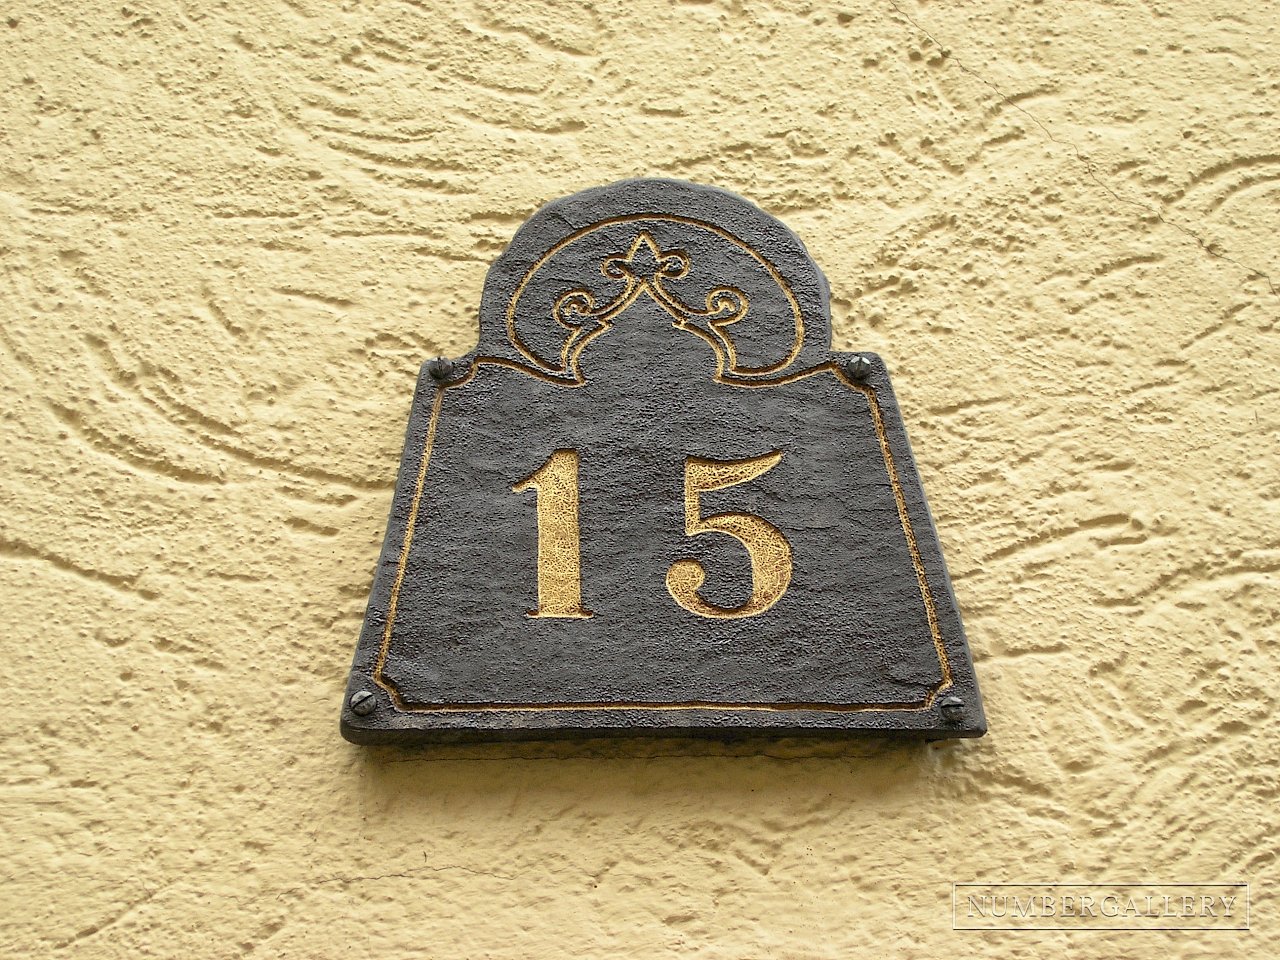 Orientalisch anmutende Hausnummer in Heidelberg